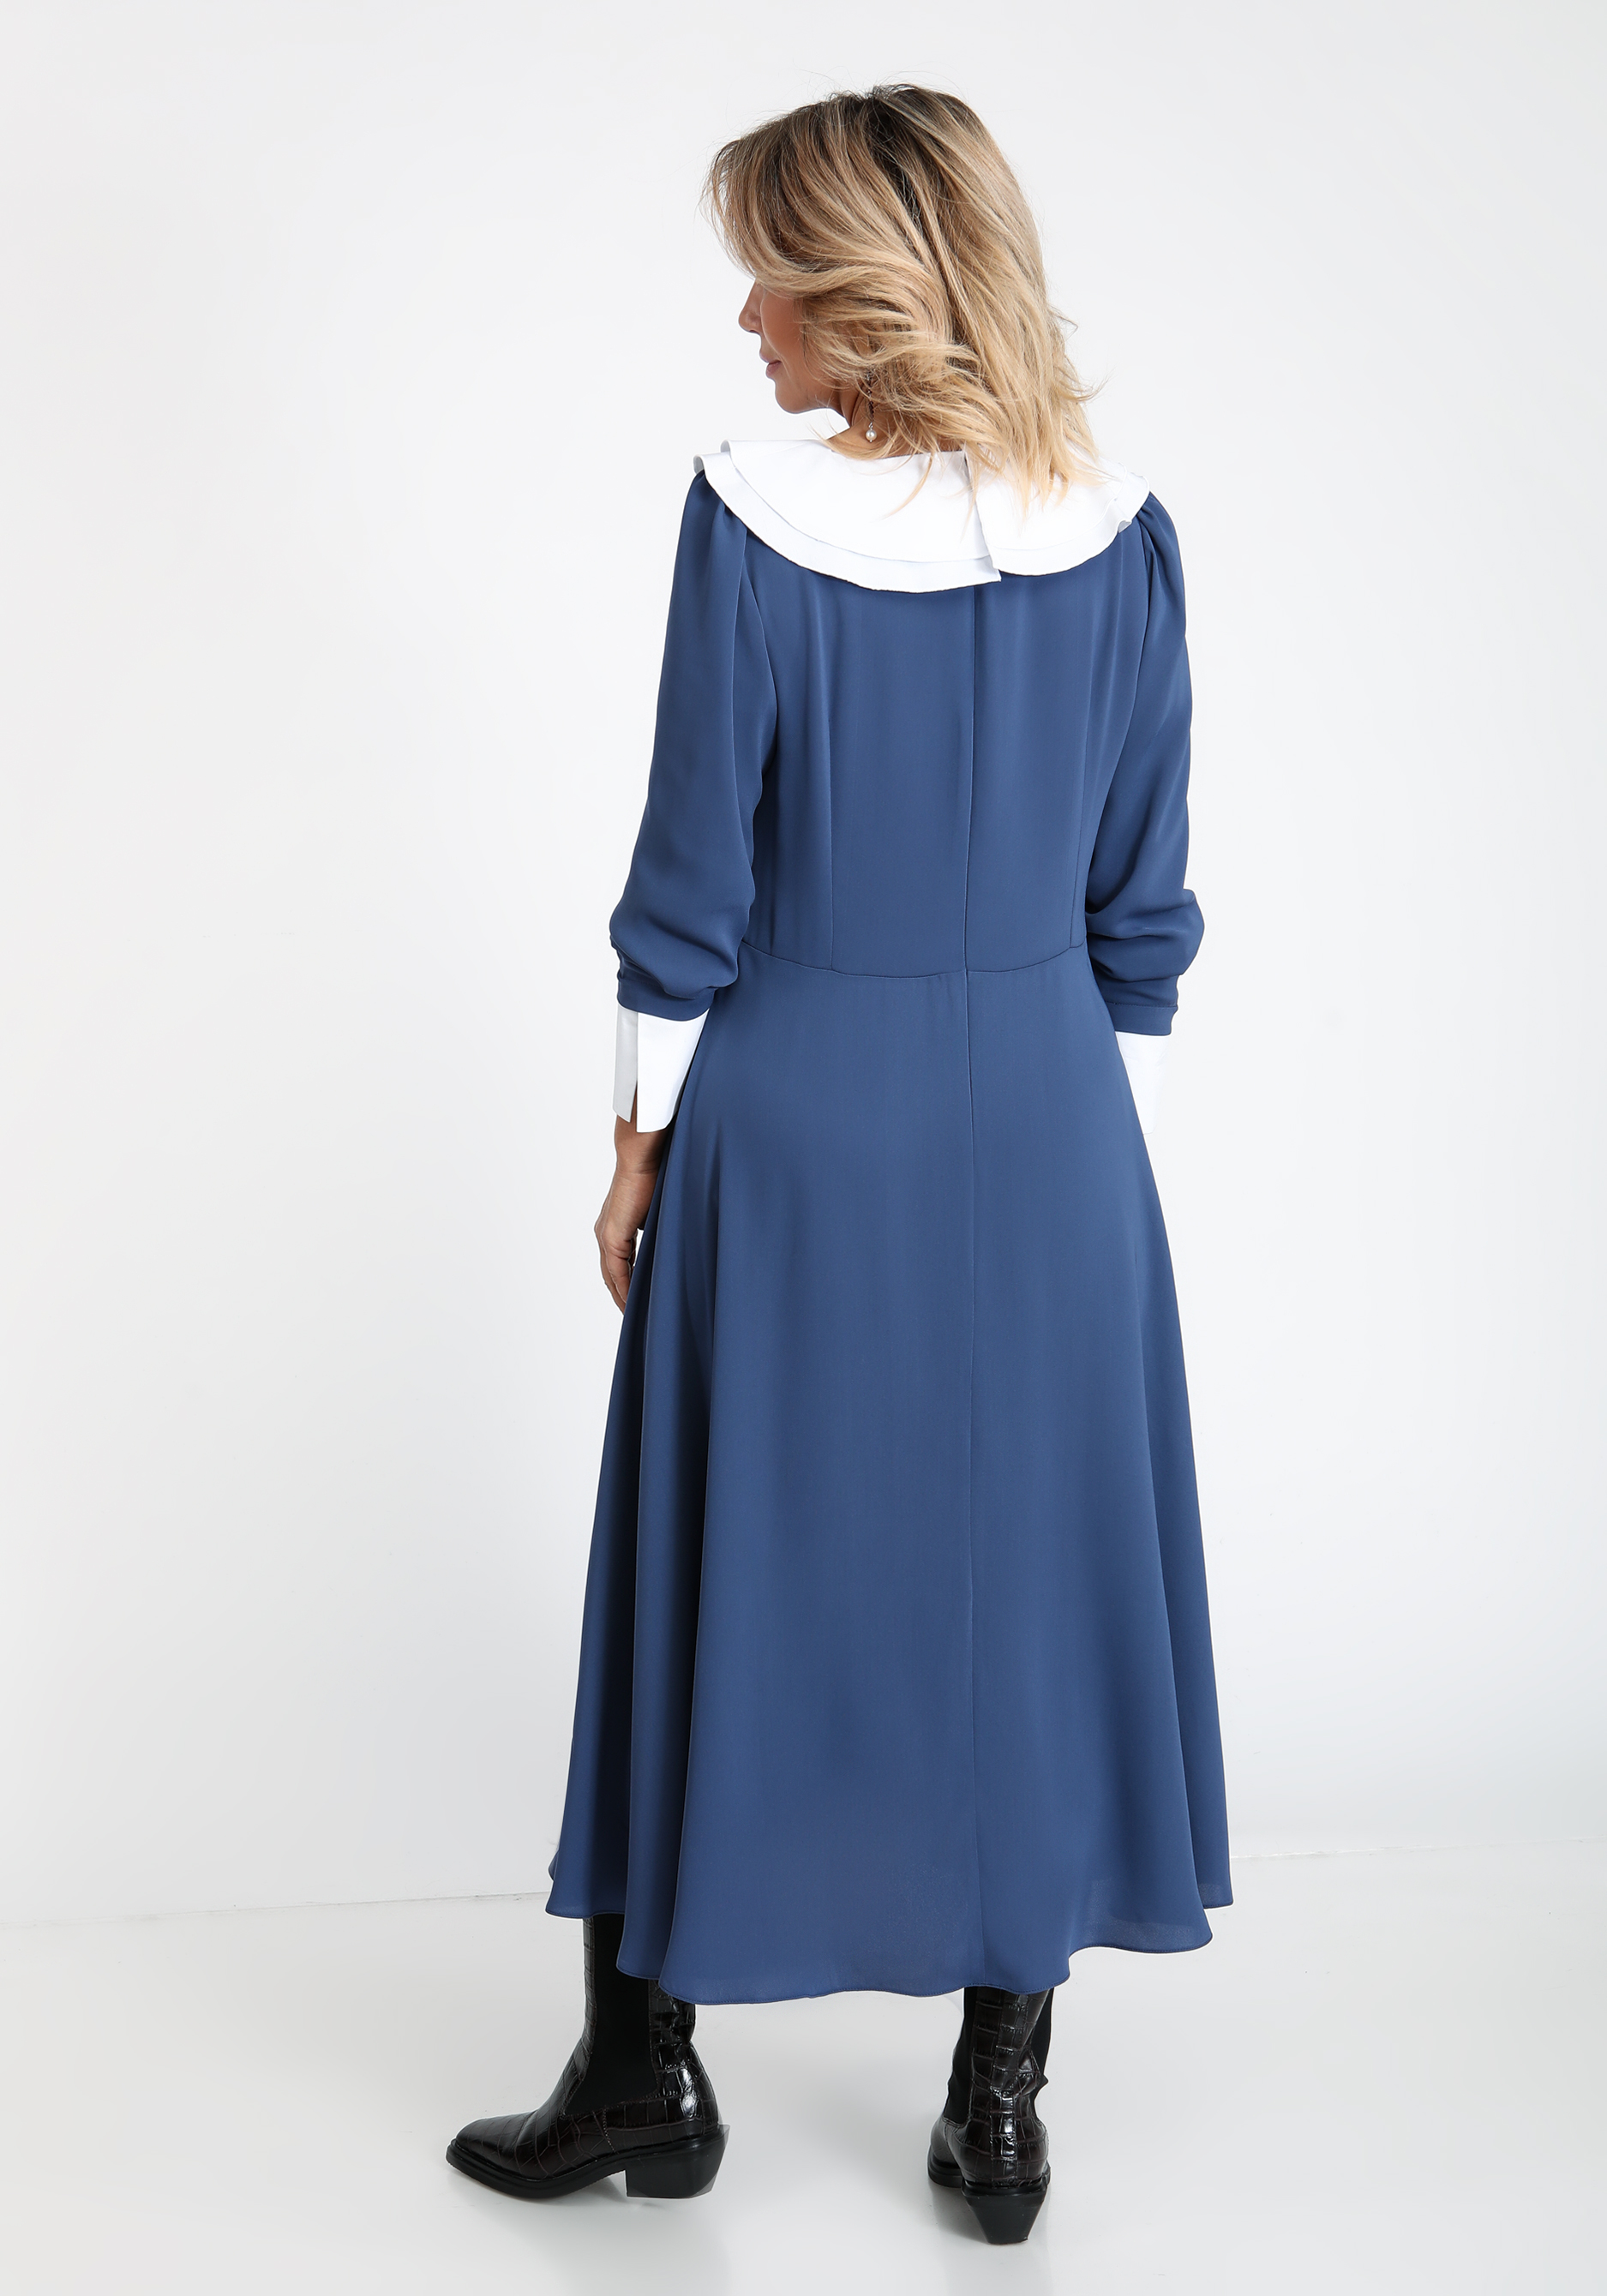 Платье со съемным воротником и манжетами Vivienne Mare, размер 56, цвет синий - фото 3